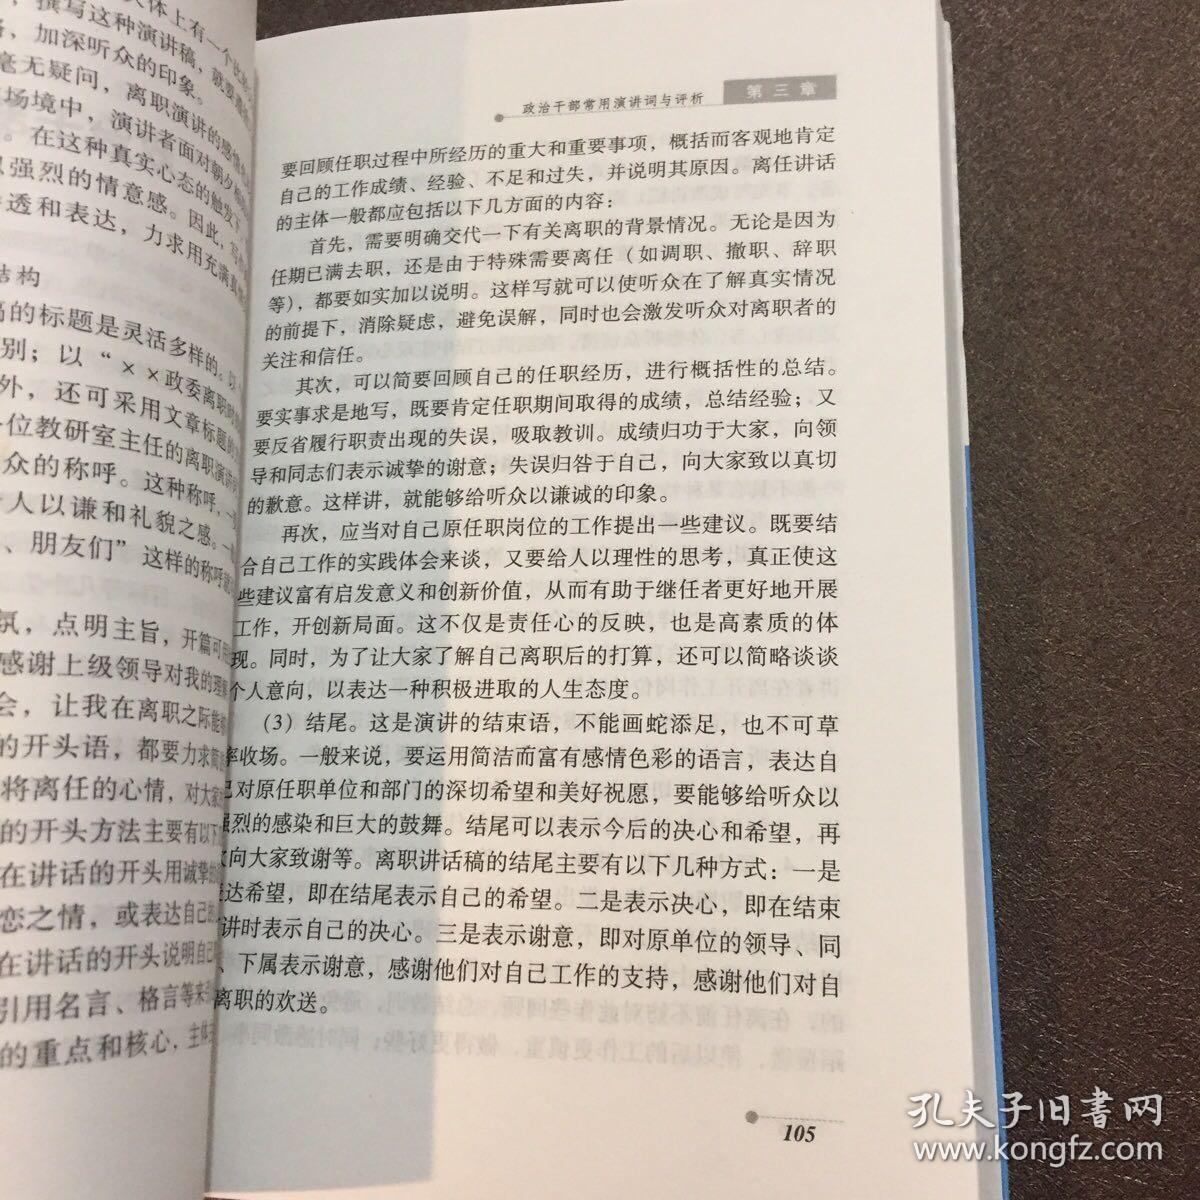 政治干部常用演讲词与评析 孔夫子旧书网